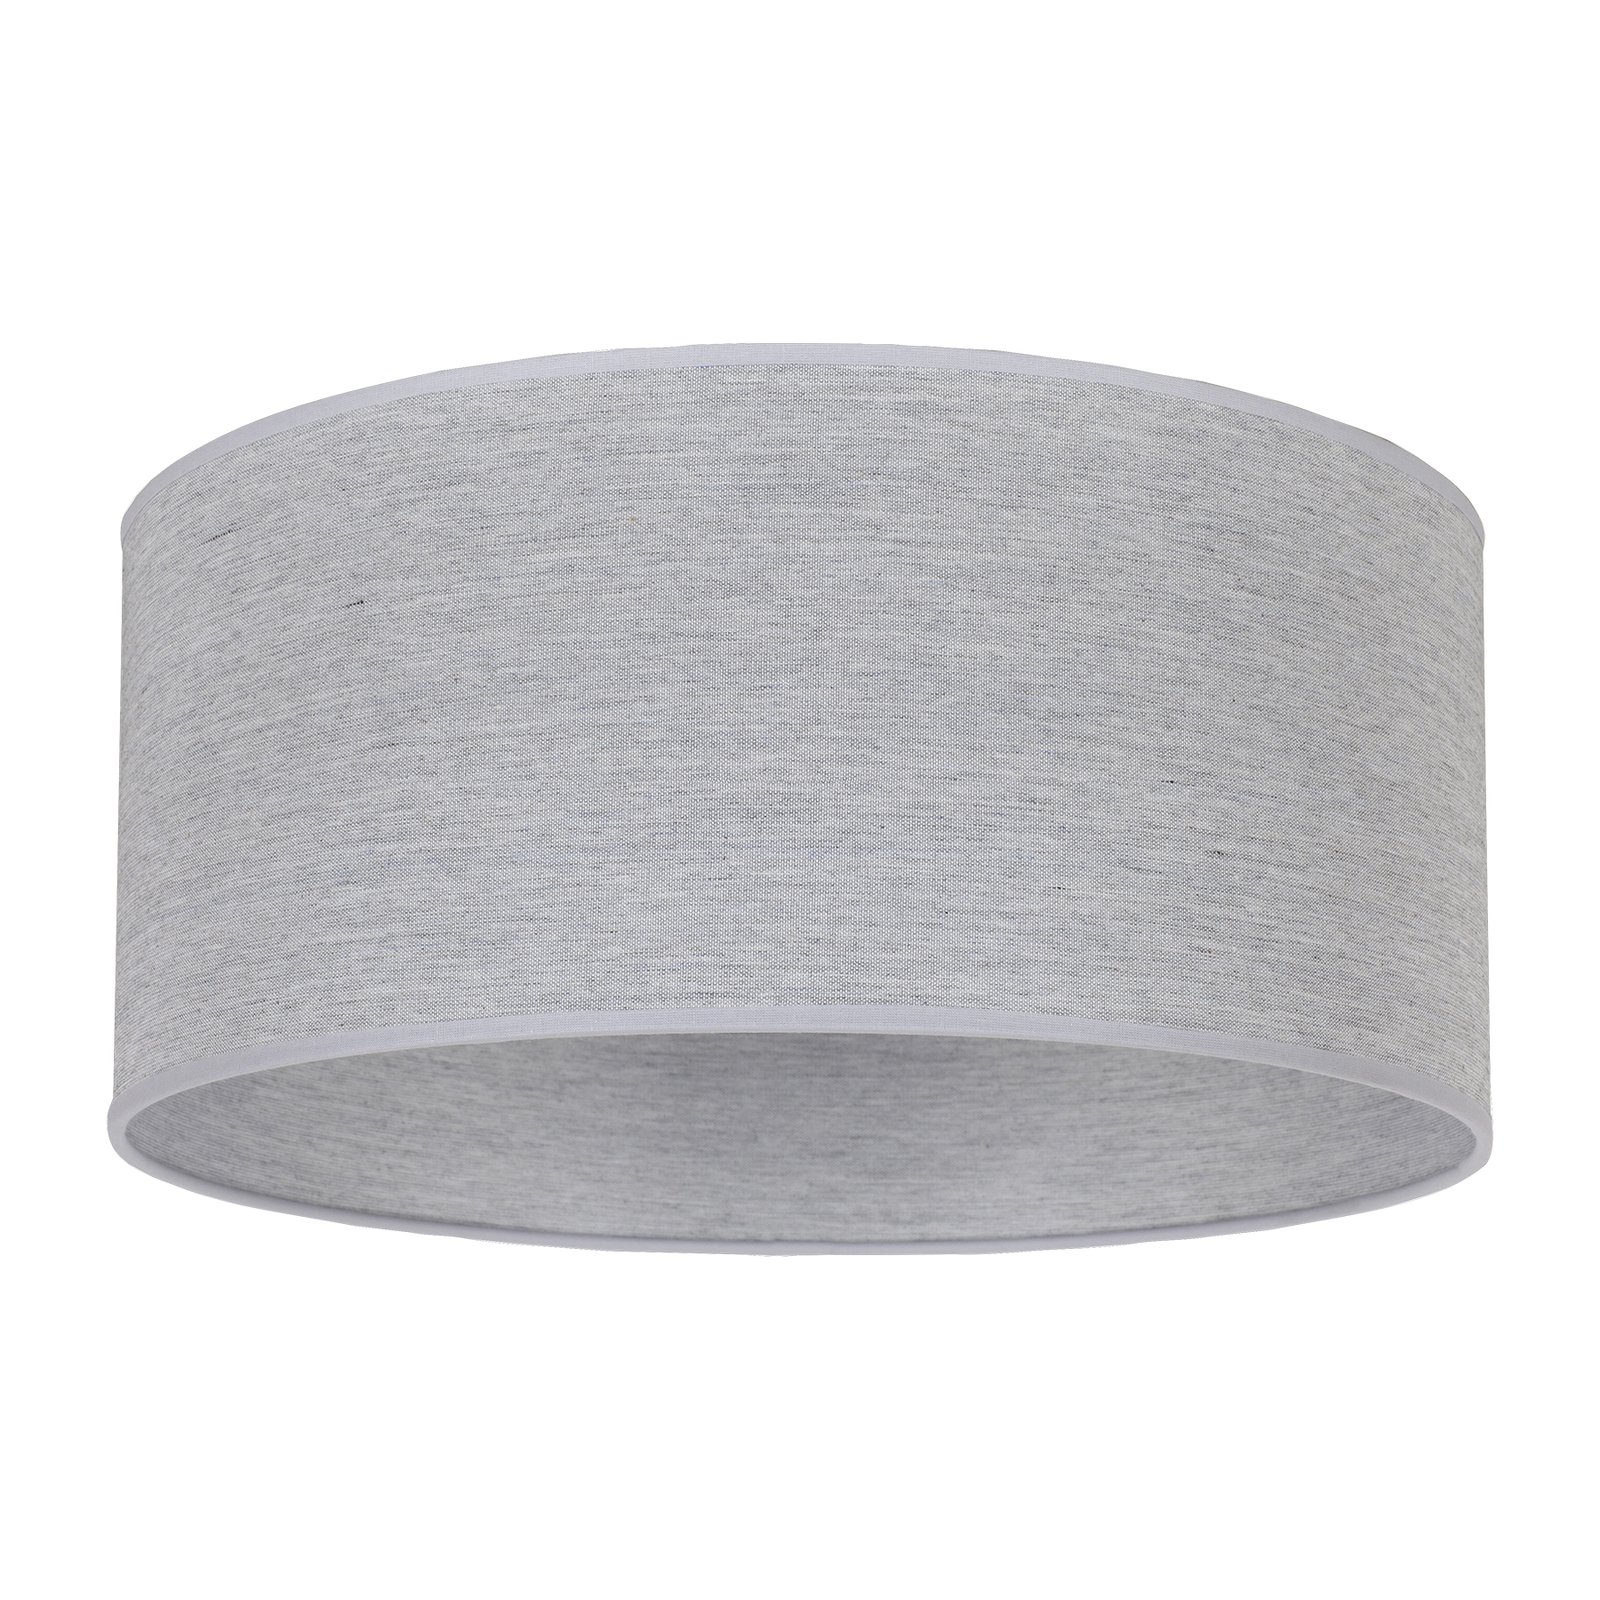 Lampeskjerm Roller, grå, Ø 50 cm, høyde 24 cm